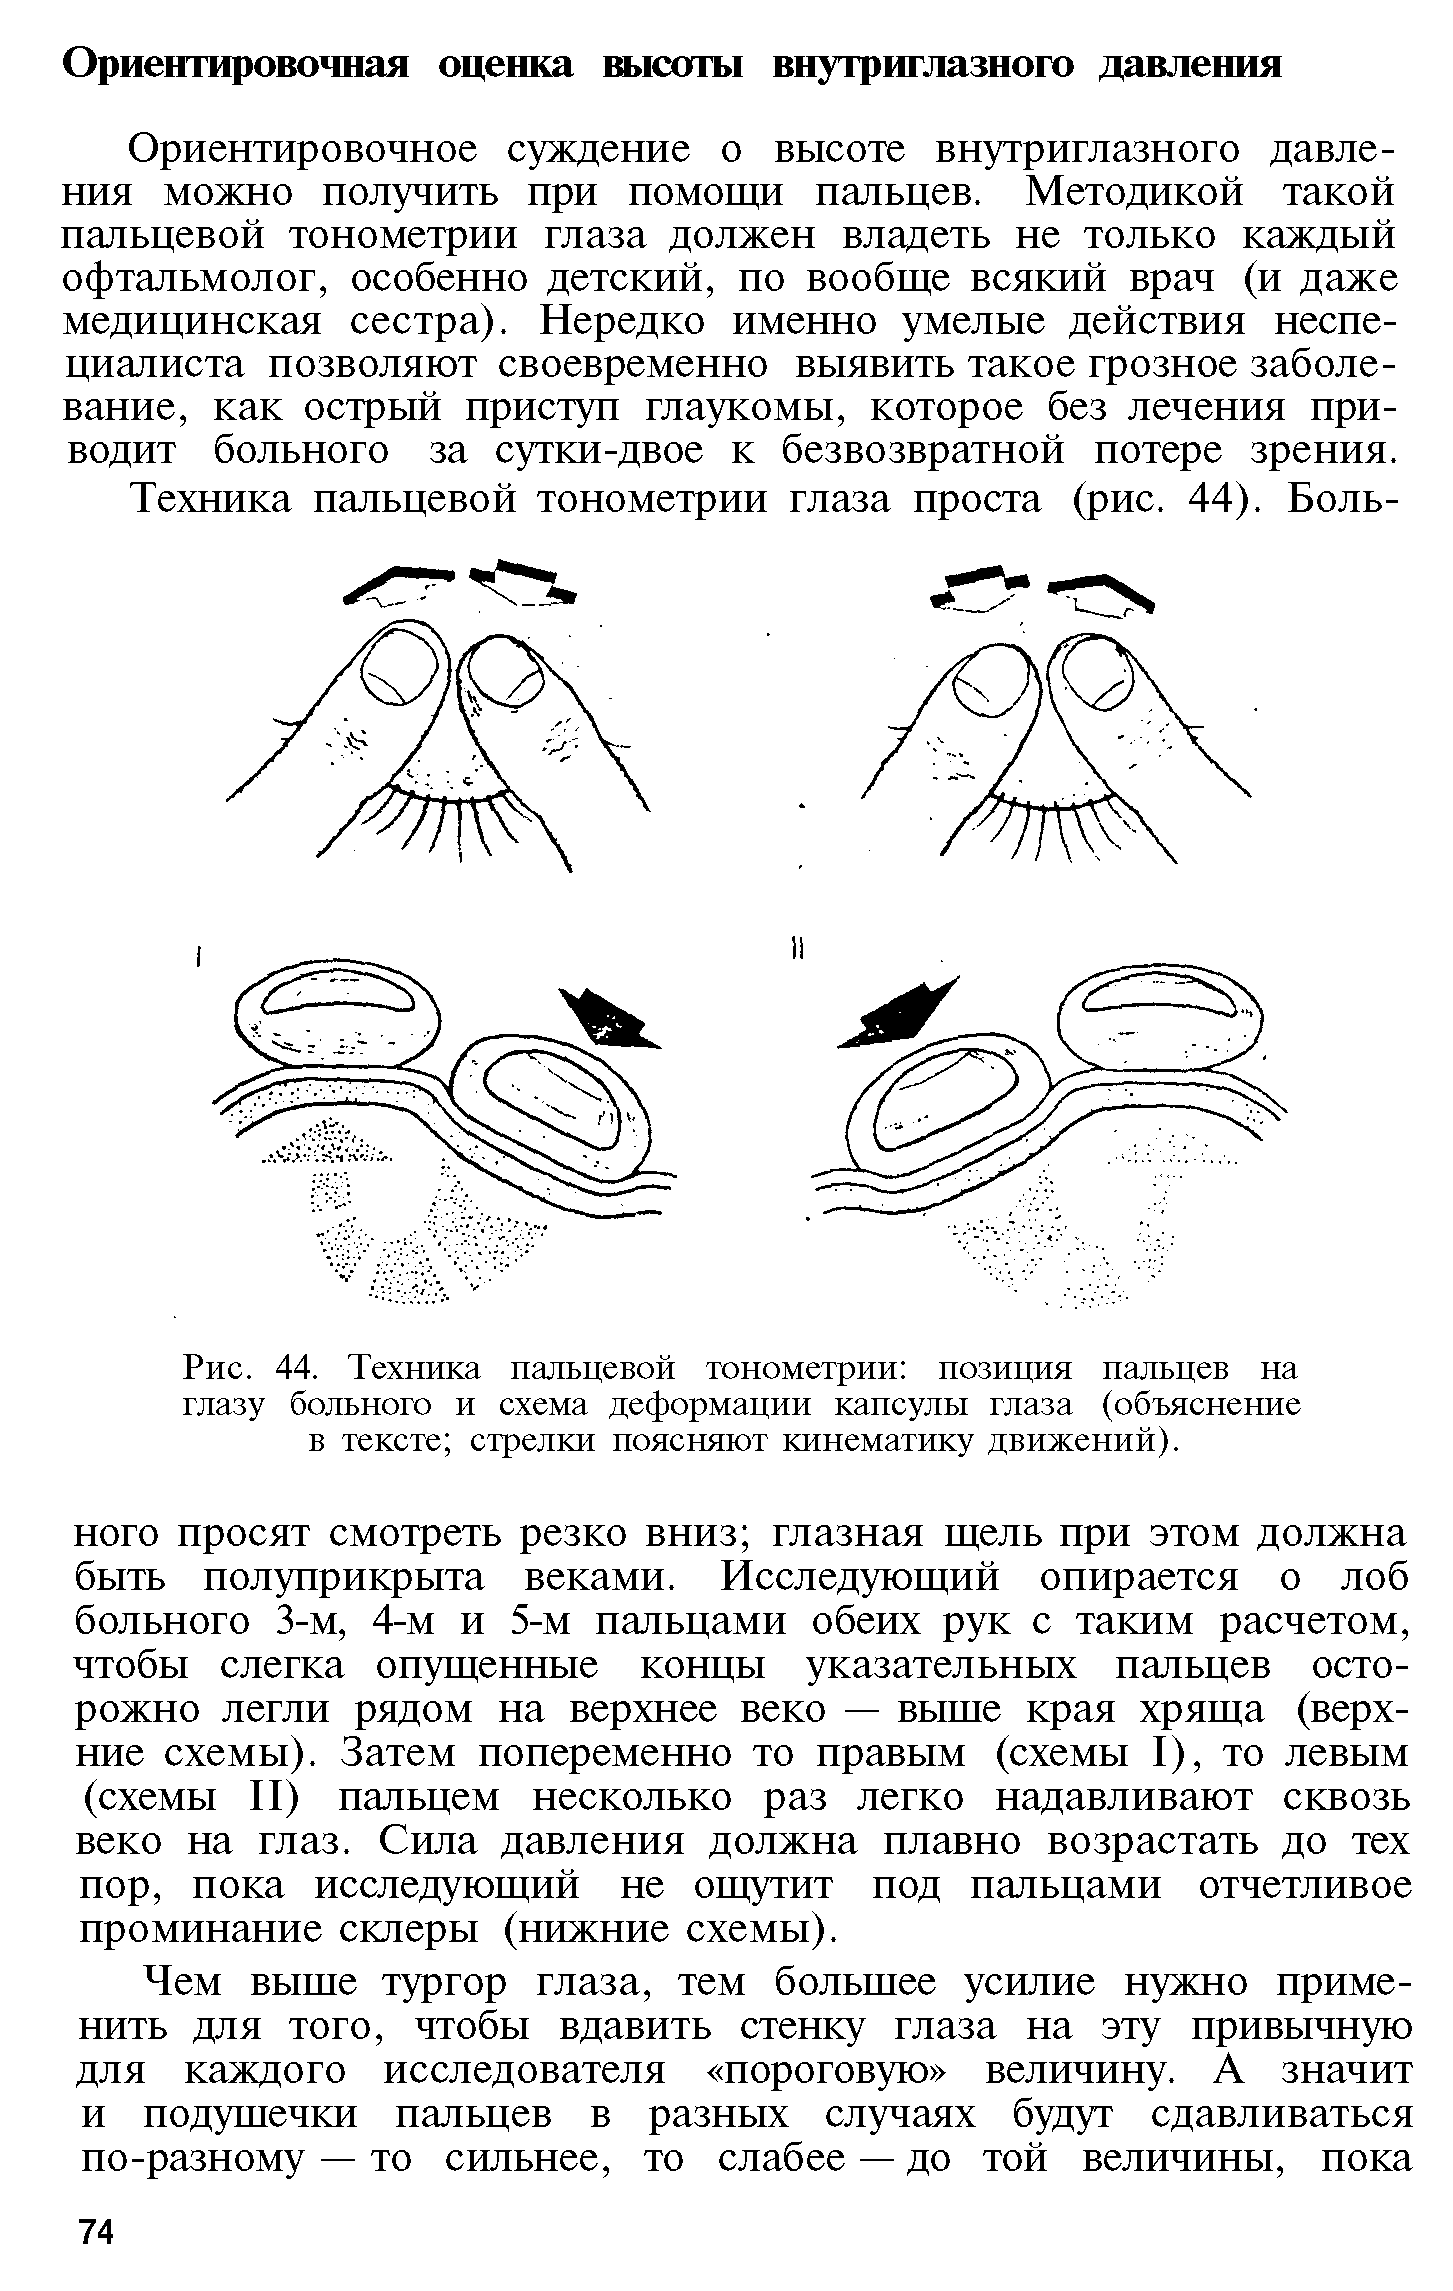 Рис. 44. Техника пальцевой тонометрии позиция пальцев на глазу больного и схема деформации капсулы глаза (объяснение в тексте стрелки поясняют кинематику движений).